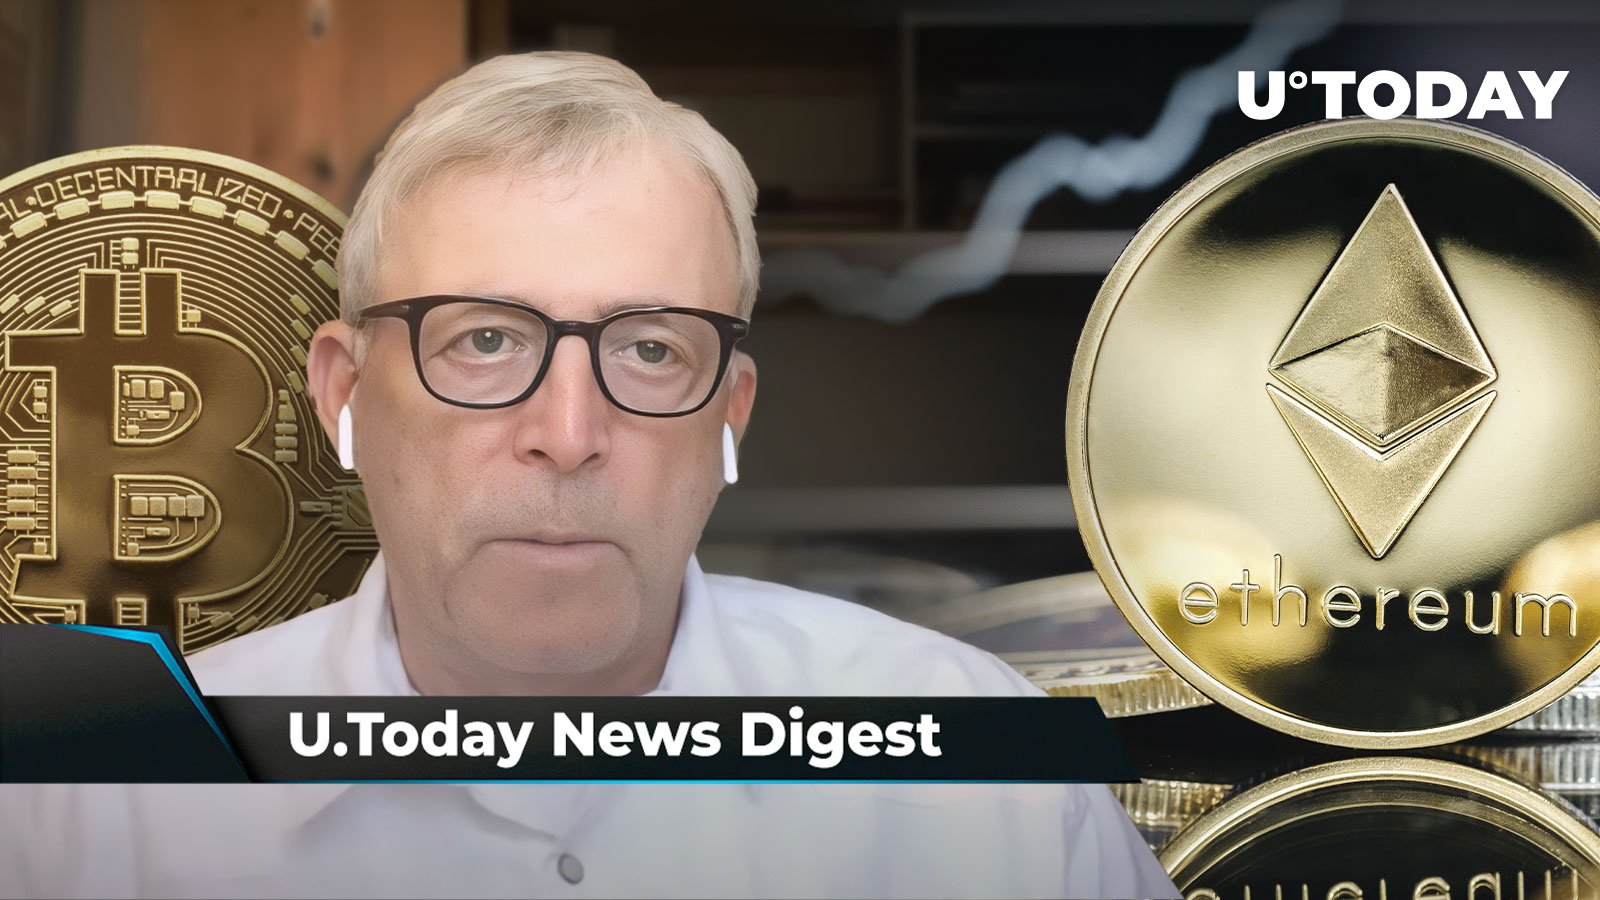 Crypto News Digest By U.today